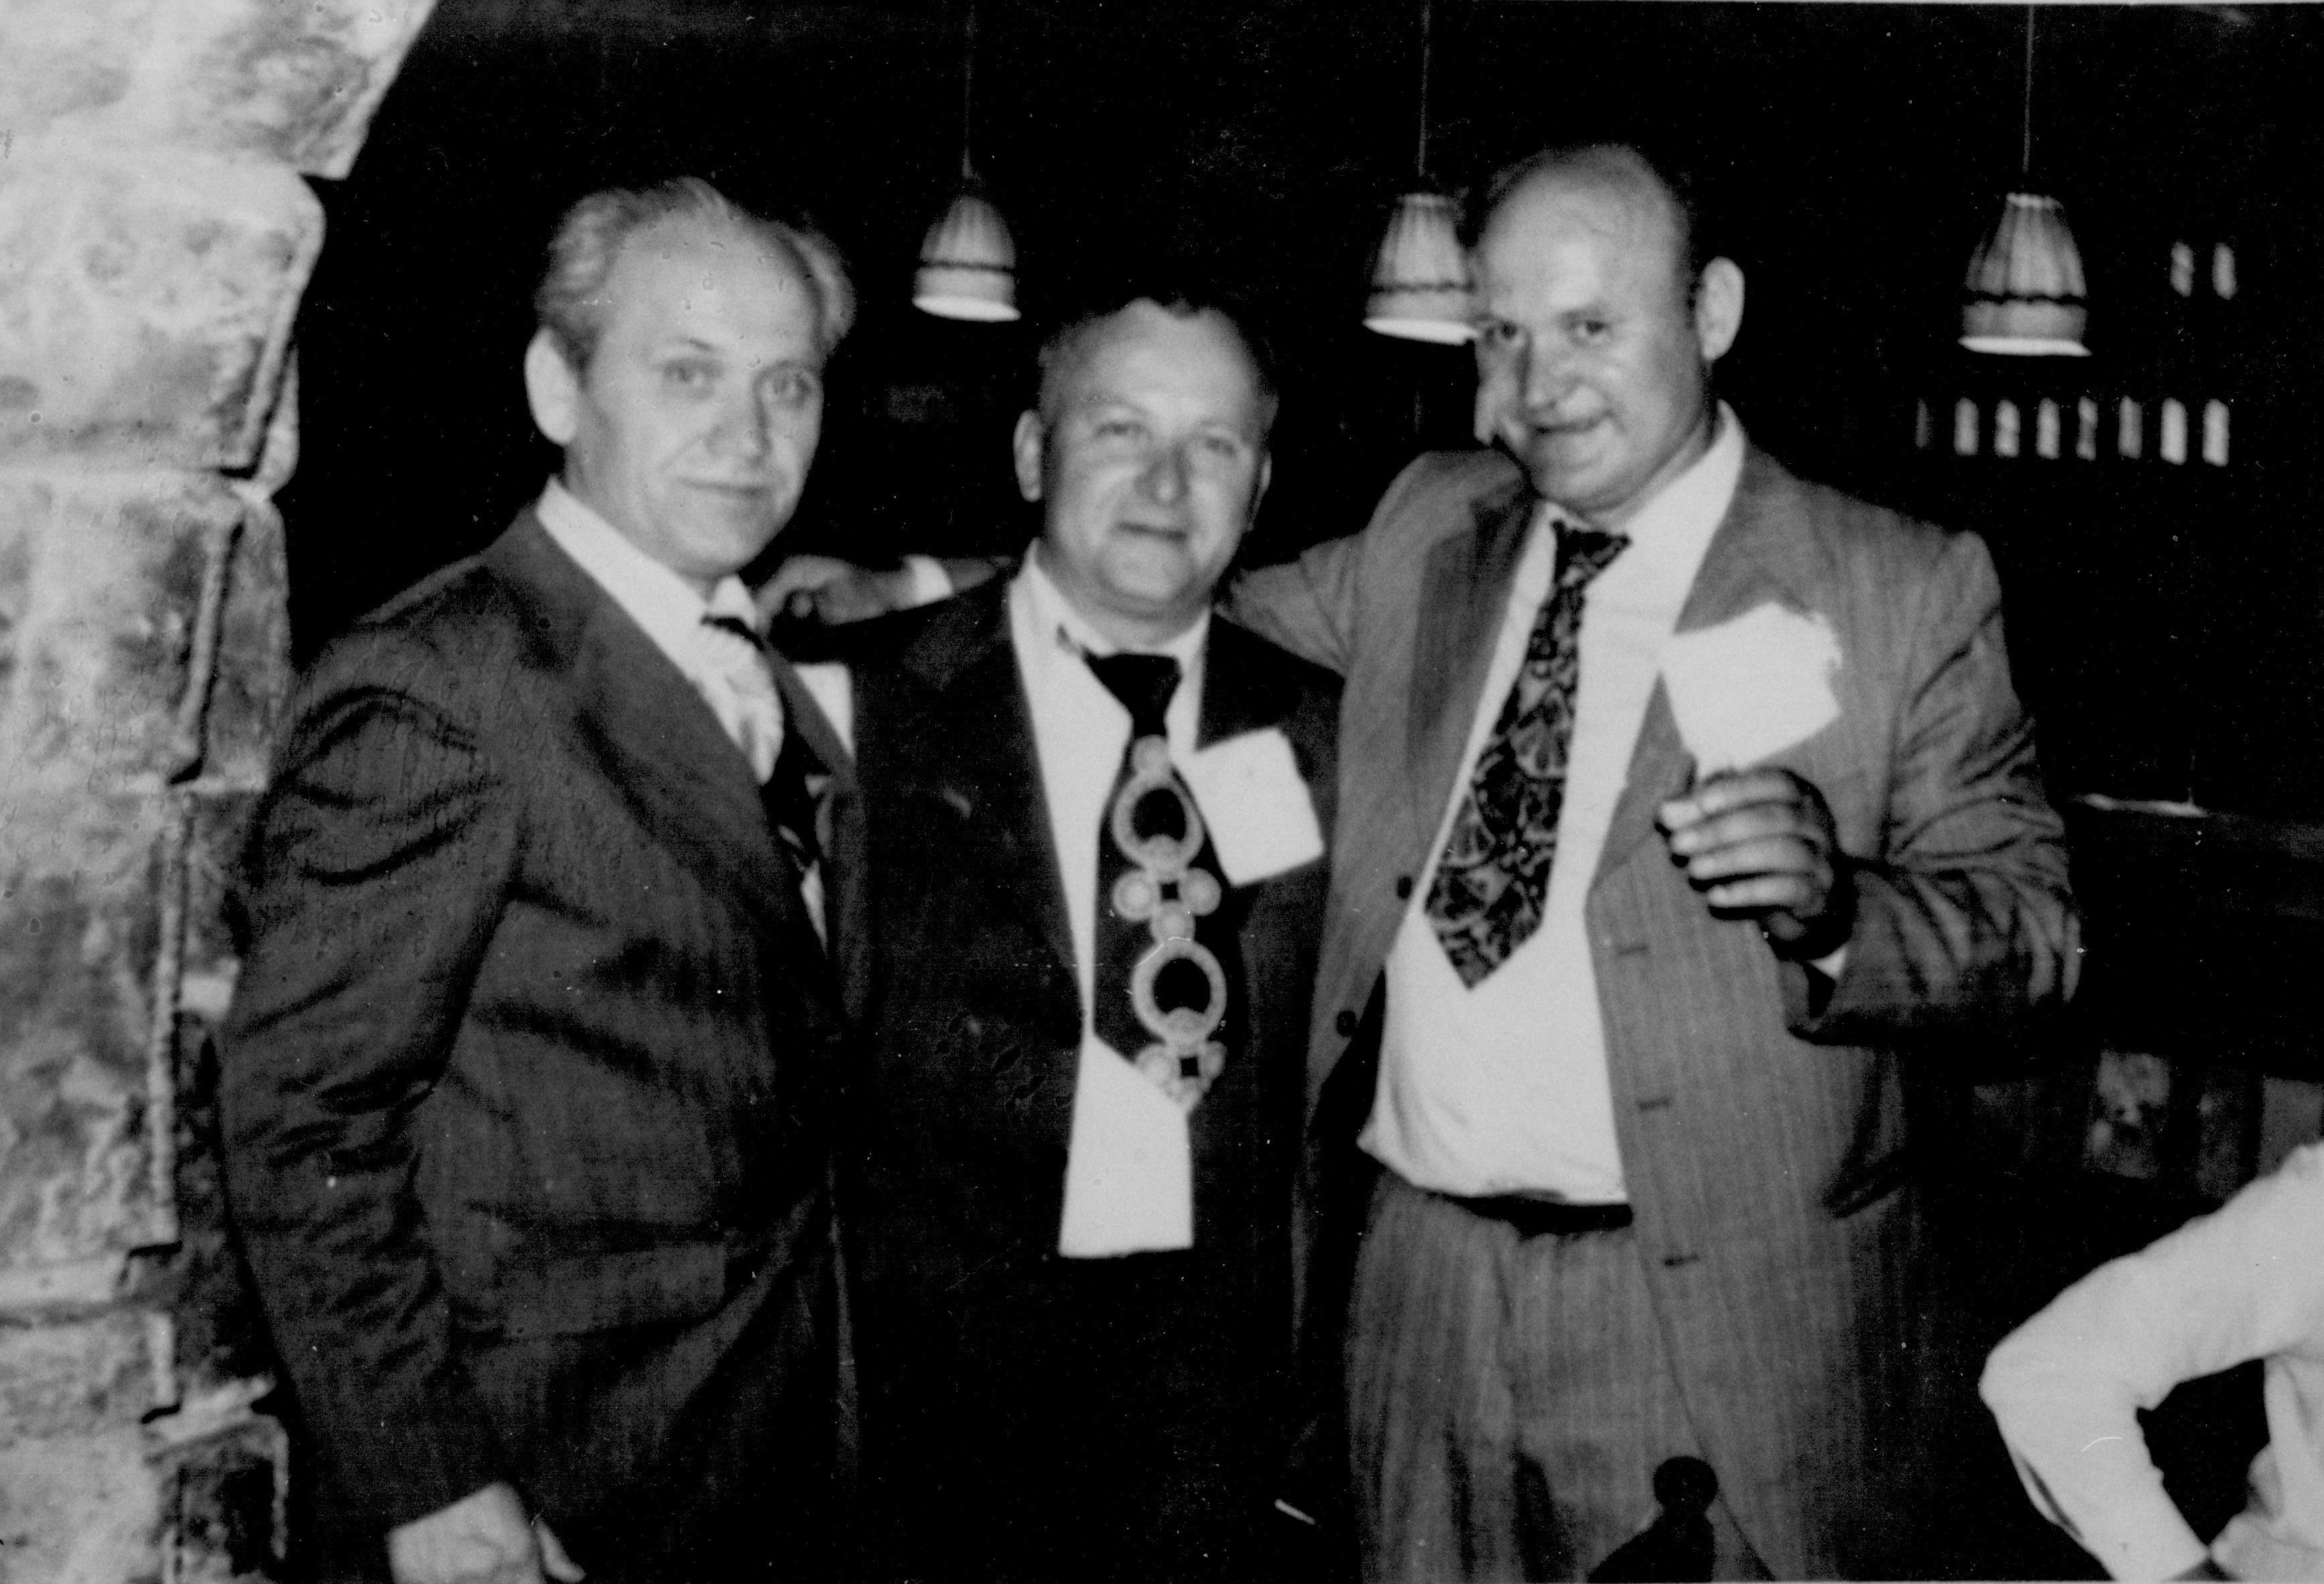 Данило, Гојко и Алекса на Свадби Радана и Мире у хотелу Турист на Палама,  27.5.1977.г.